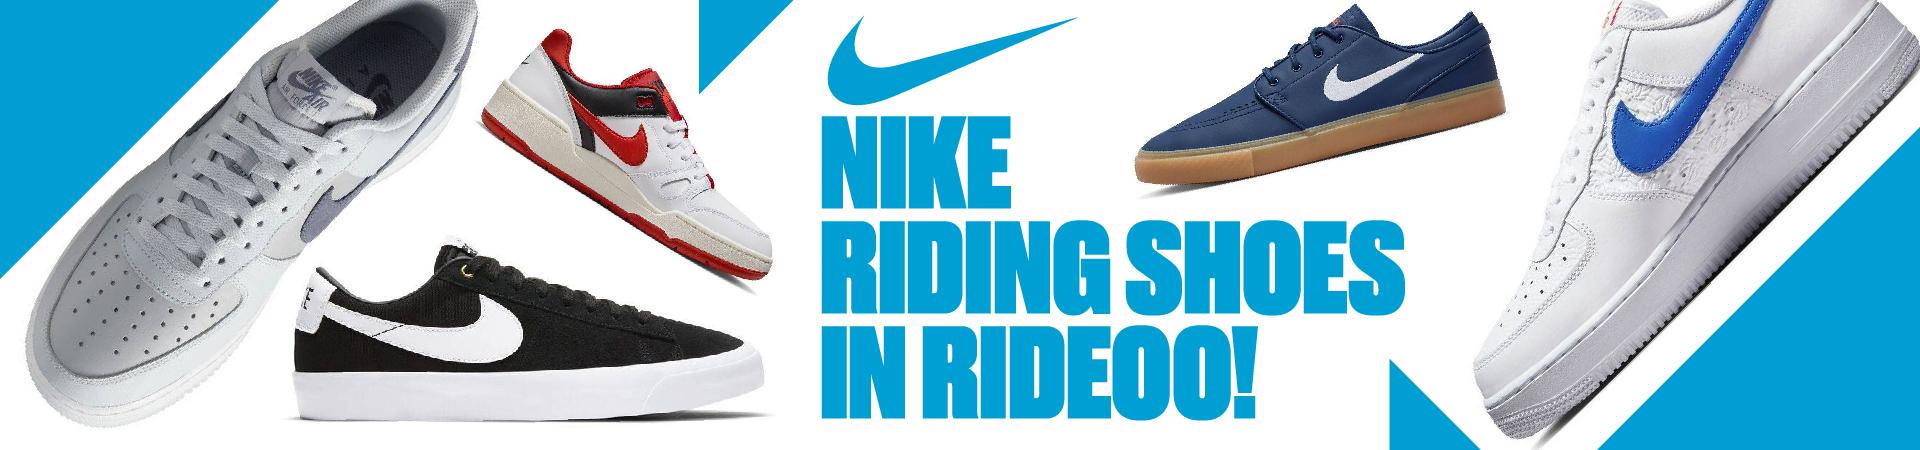 Nike batai Rideoo parduotuvėje